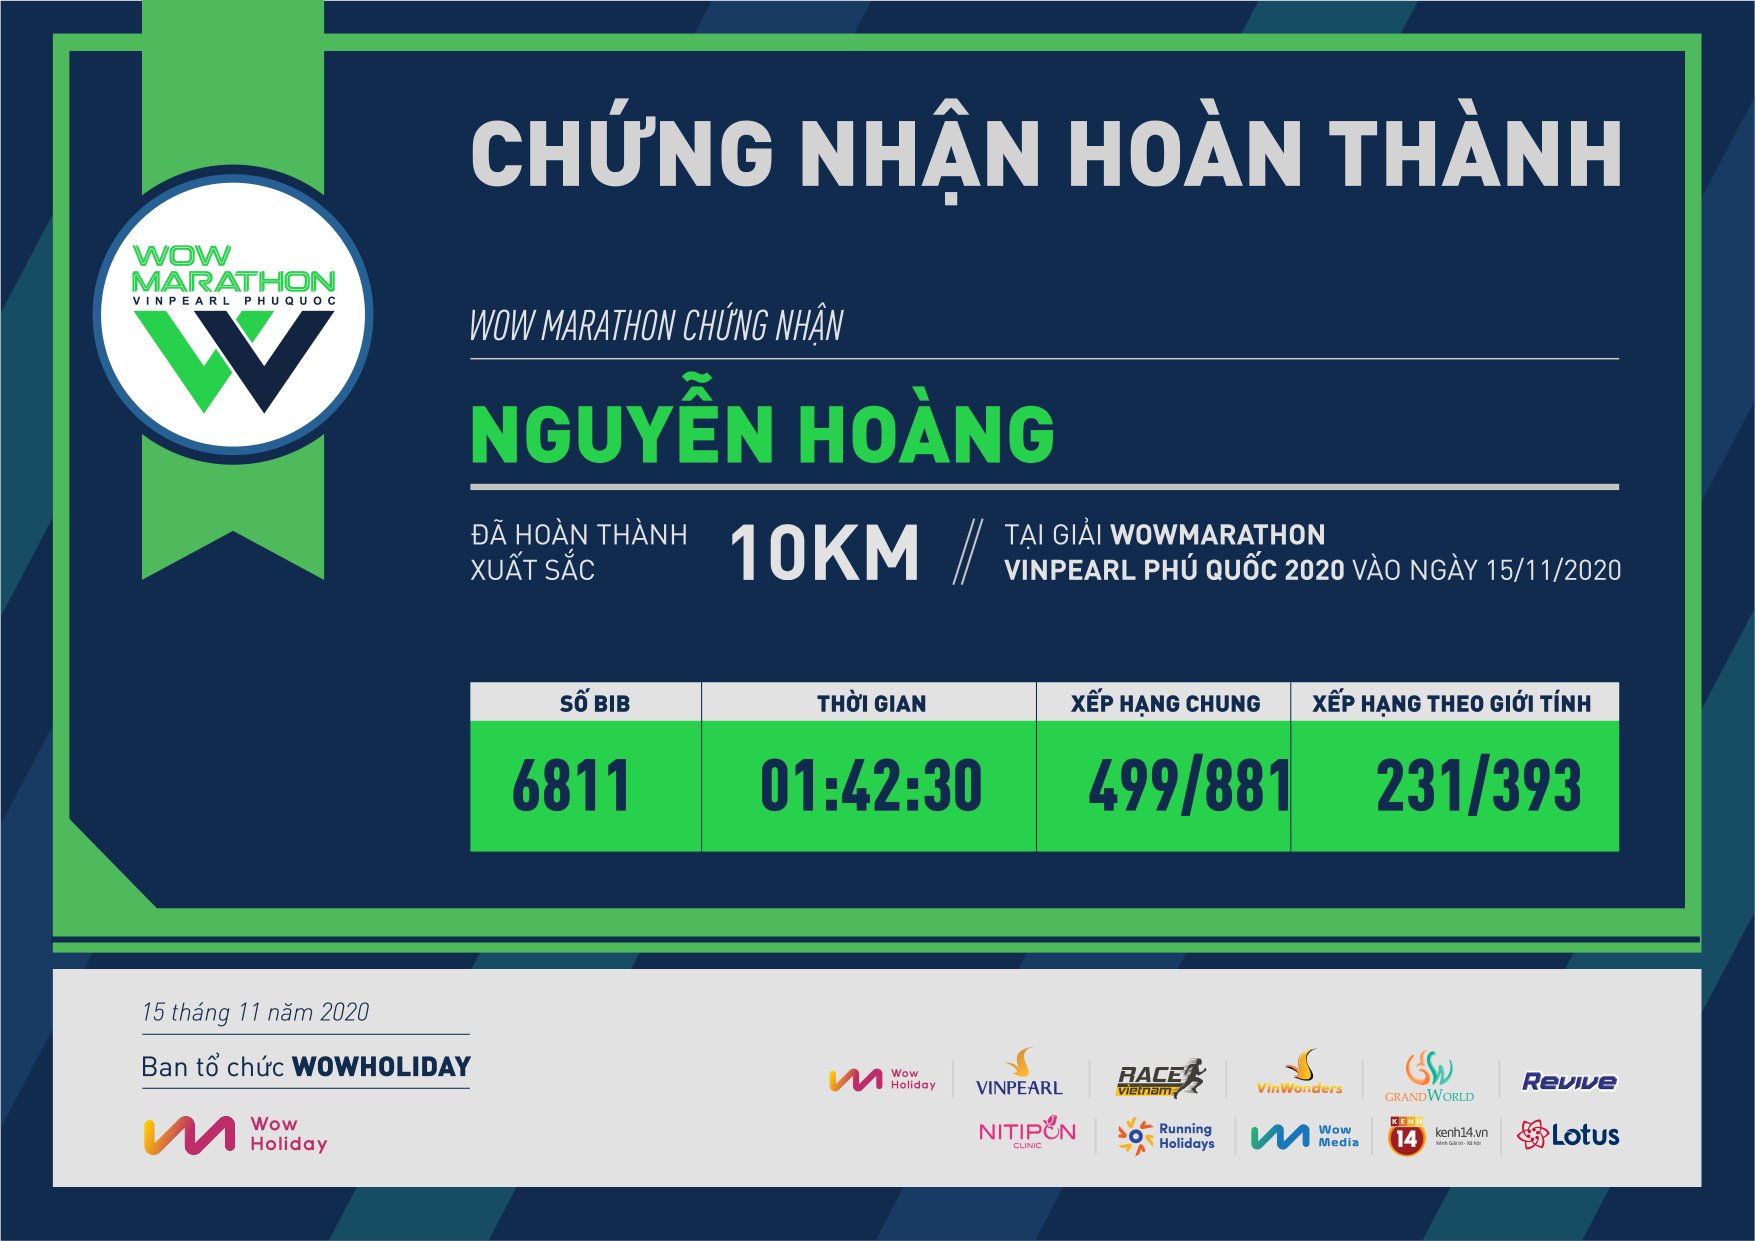 6811 - Nguyễn Hoàng